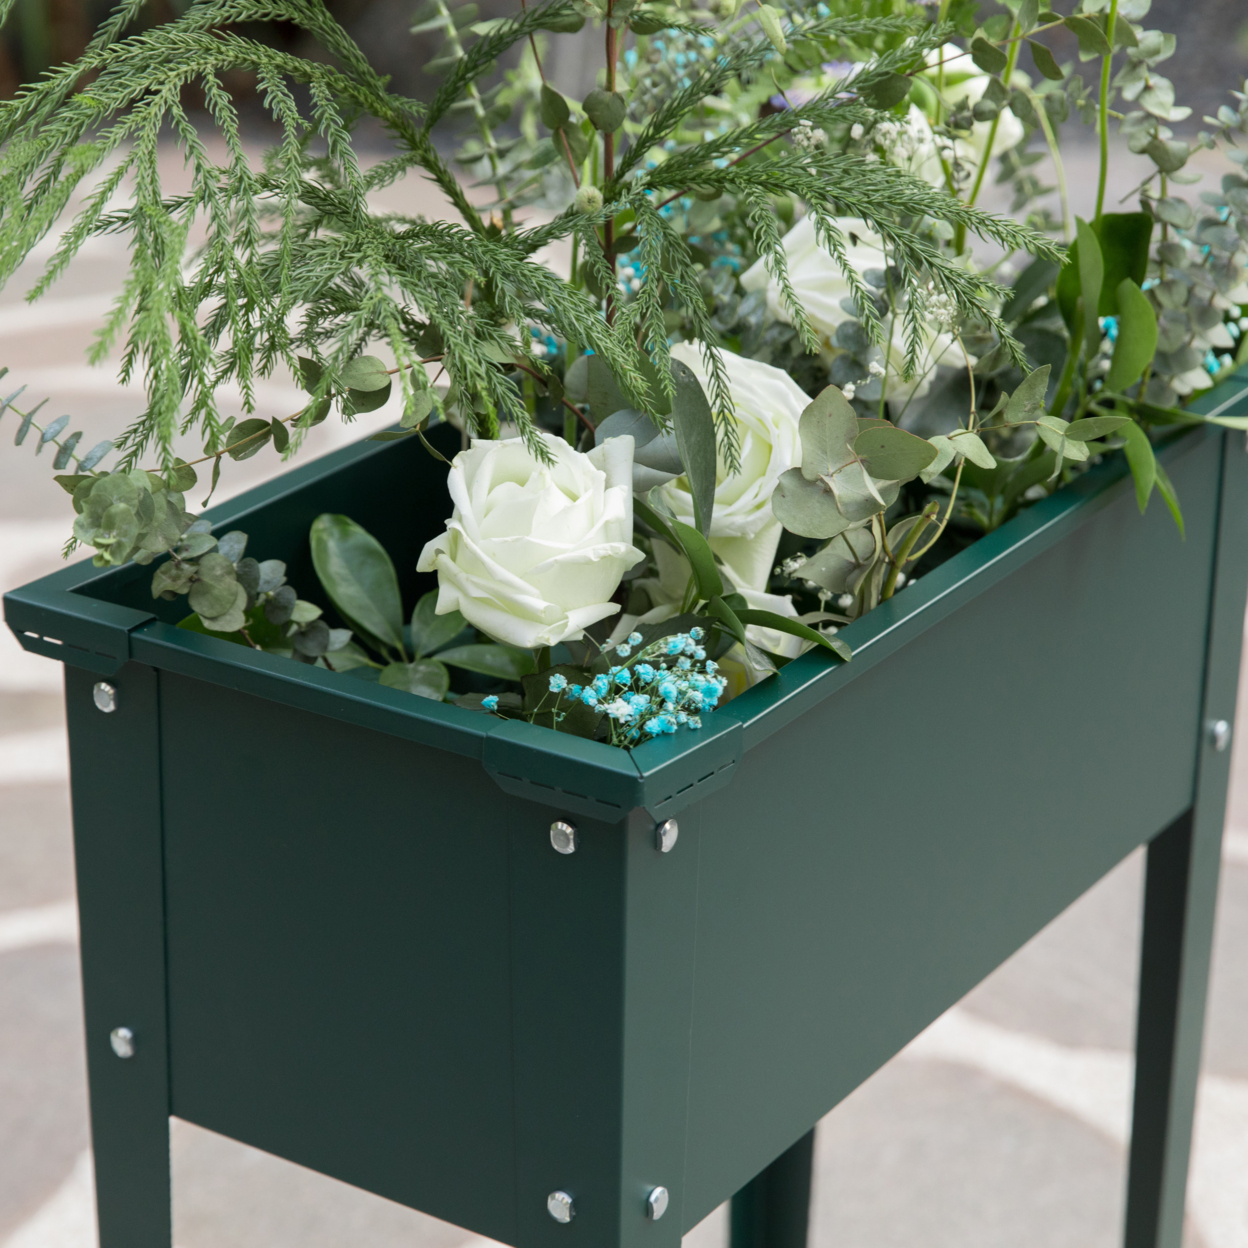 Green Freestanding Raised Garden Bed Rectangular Flower Planter